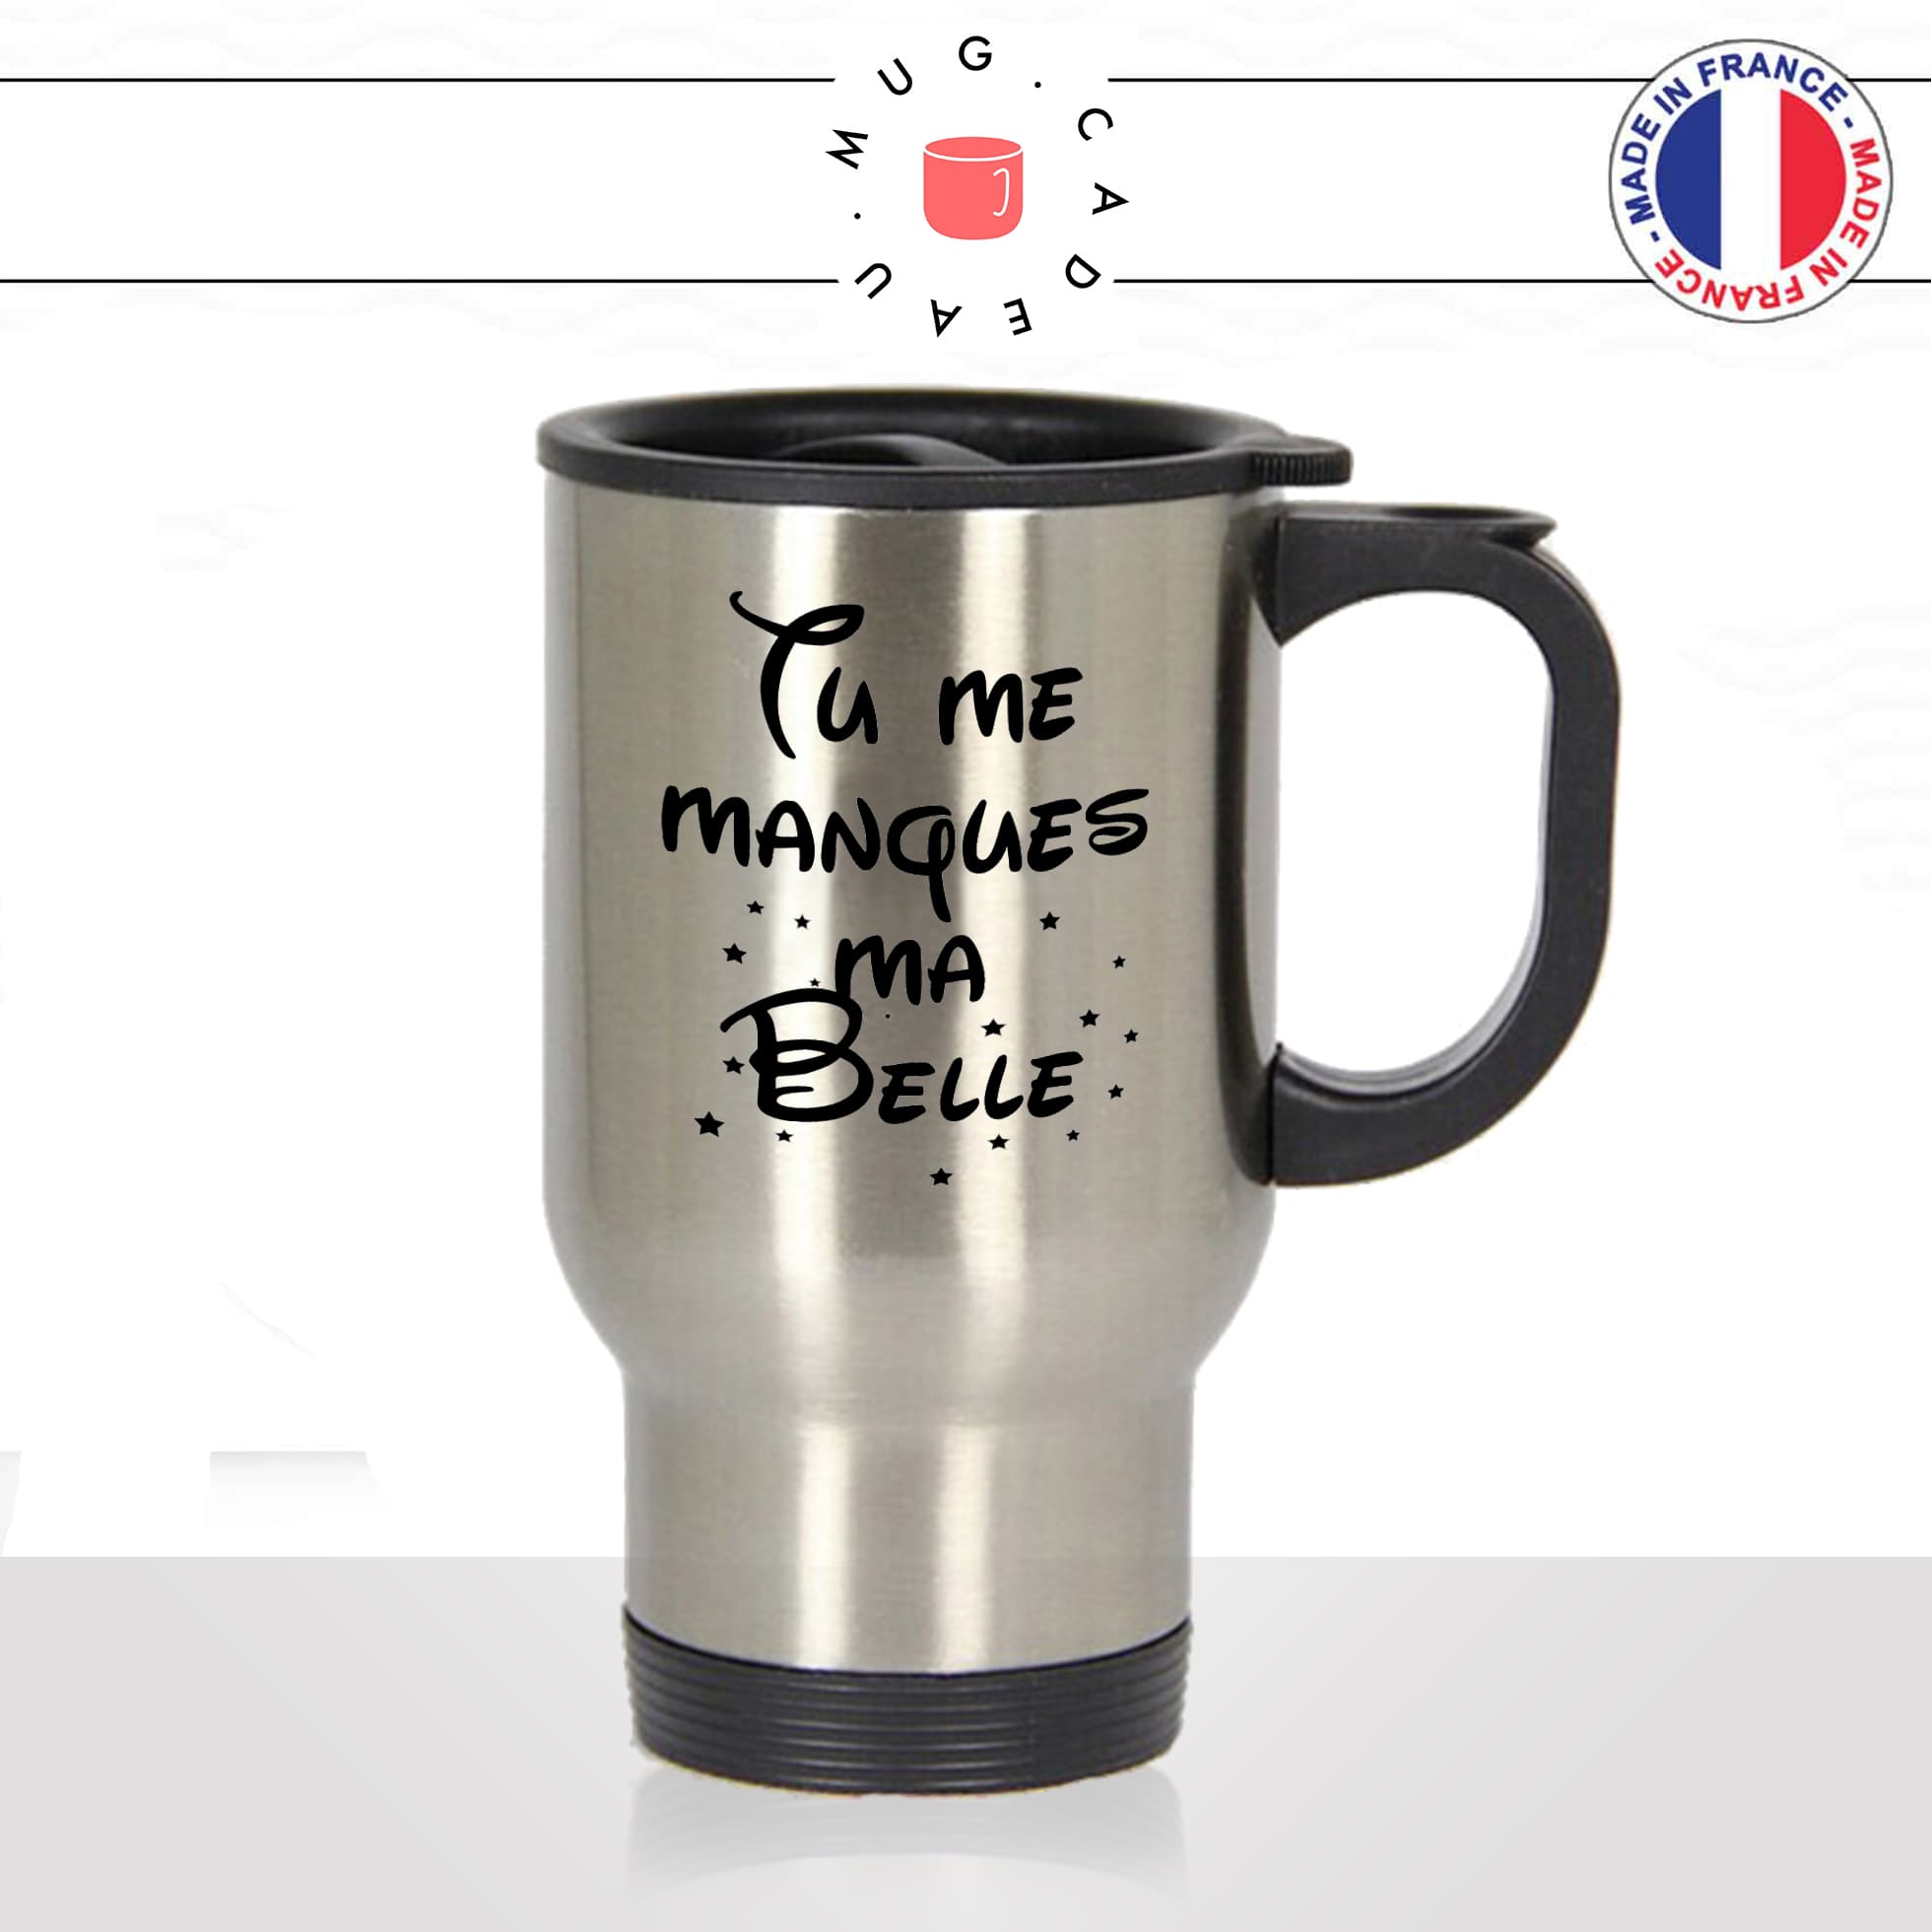 mug-tasse-thermos-isotherme-voyage-tu-me-manque-ma-belle-jolie-femme-opine-amour-mignon-humour-fun-idée-cadeau-originale-cool2